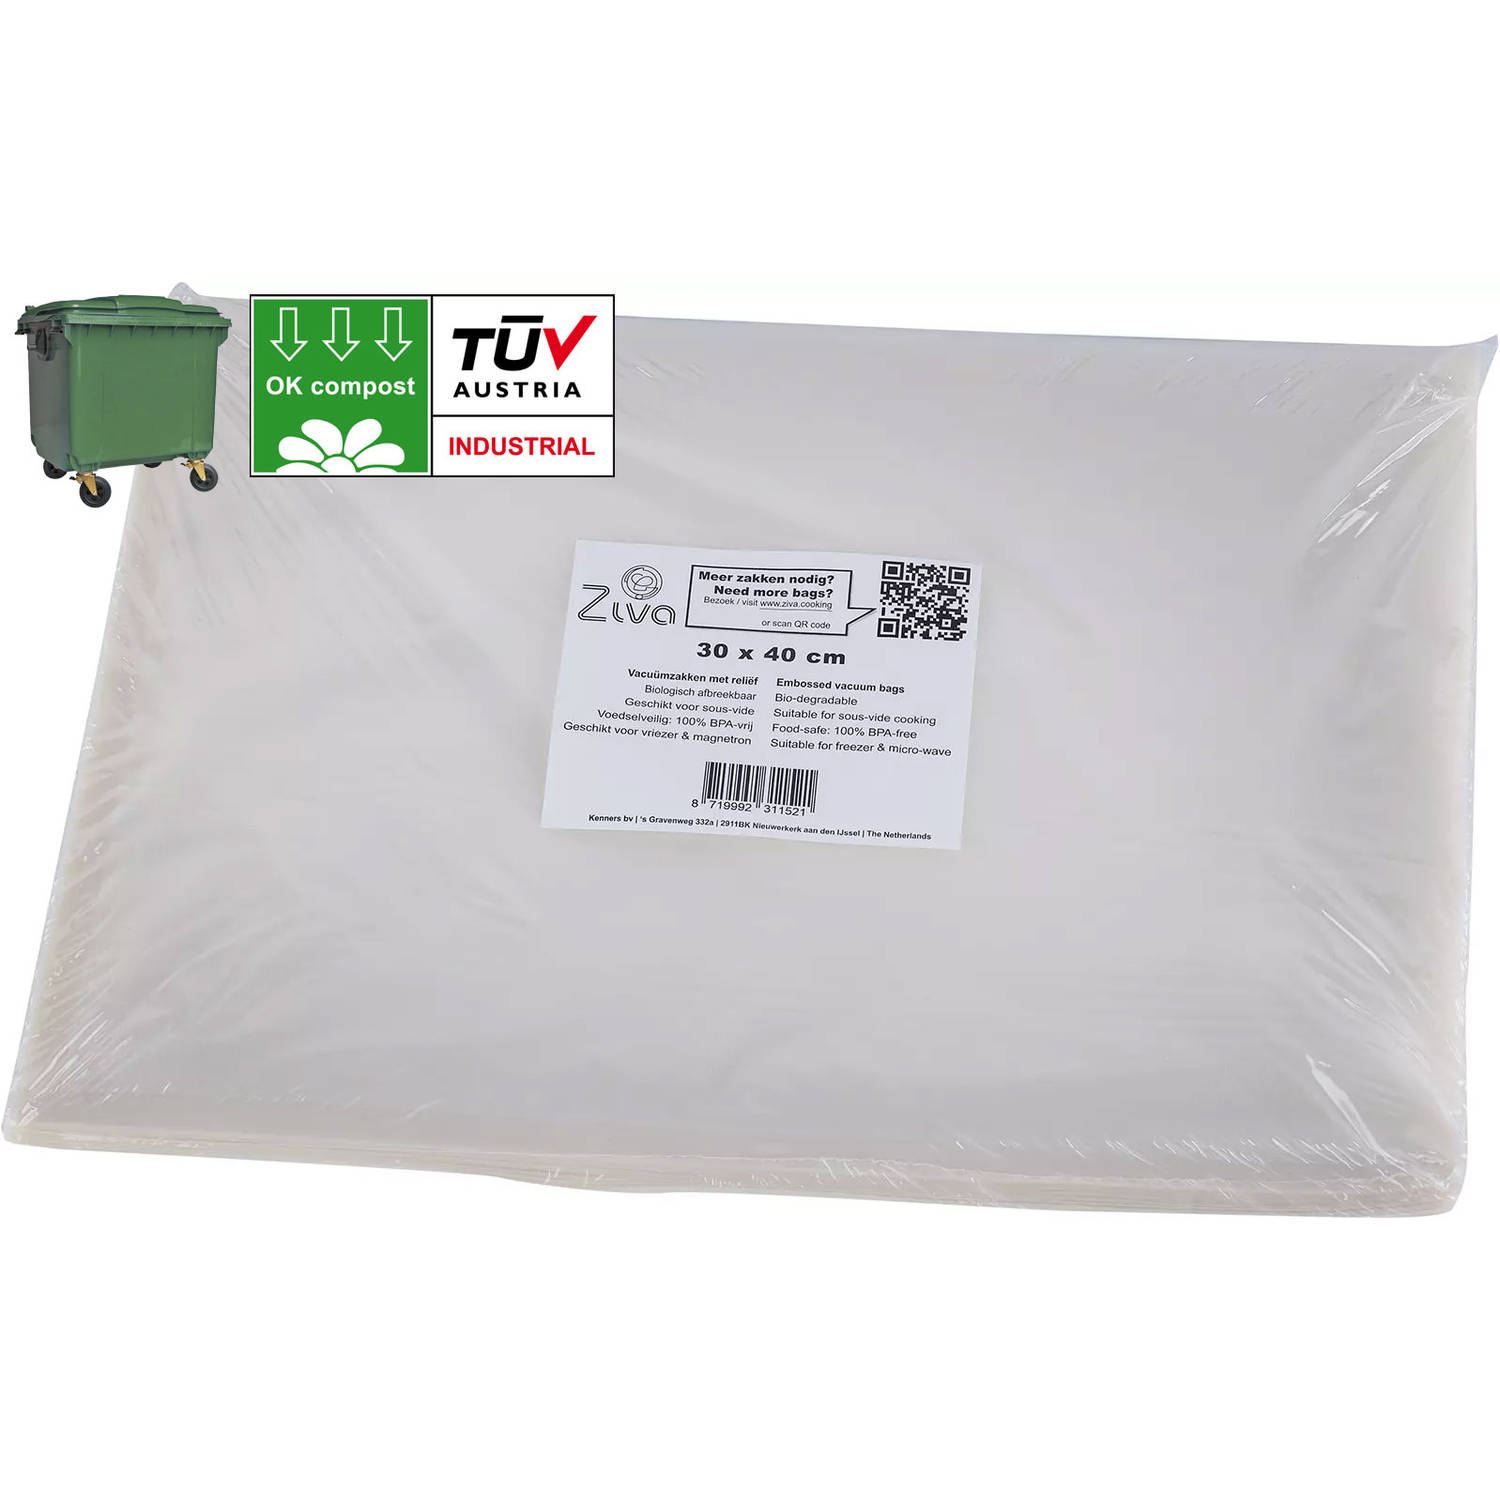 Ziva vacuümzakken met reliëf 30x40cm - geschikt voor groene container - OK Compost Industrial (EN 13432) - extra sterk 113 µm dik - geschikt voor sous-vide, vriezer en magnetron